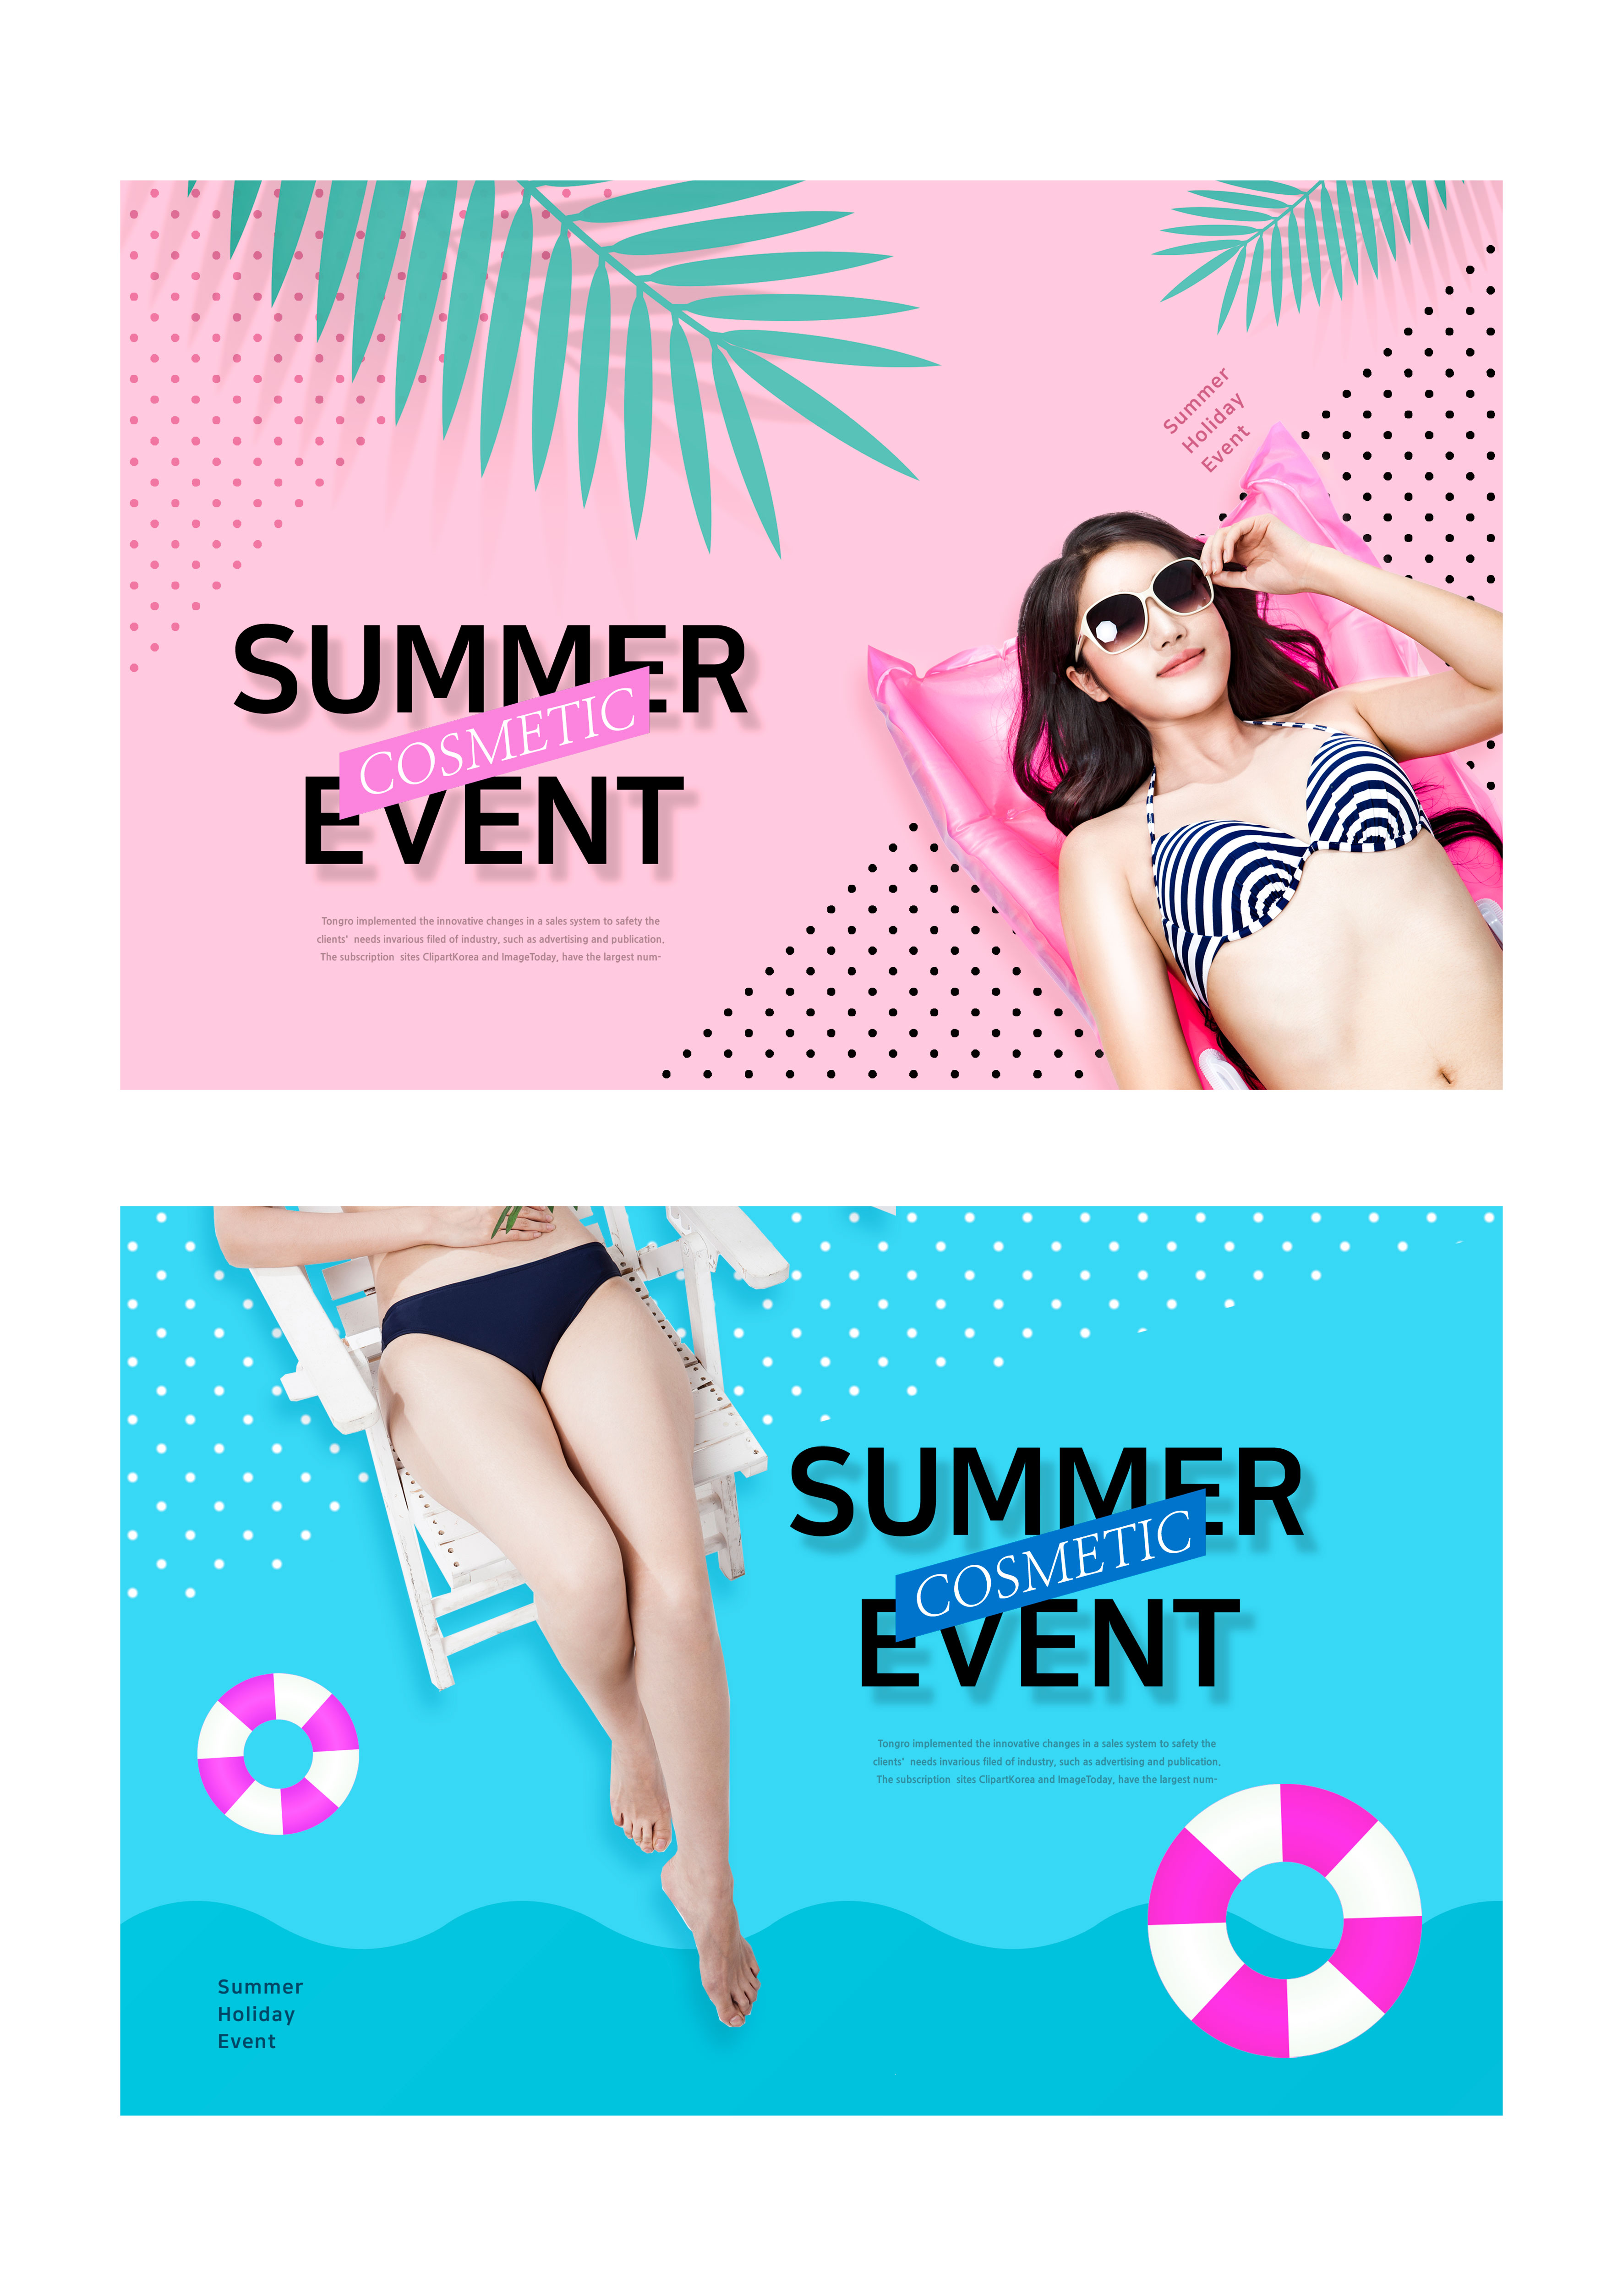 夏季主题活动推广Banner/海报设计模板插图